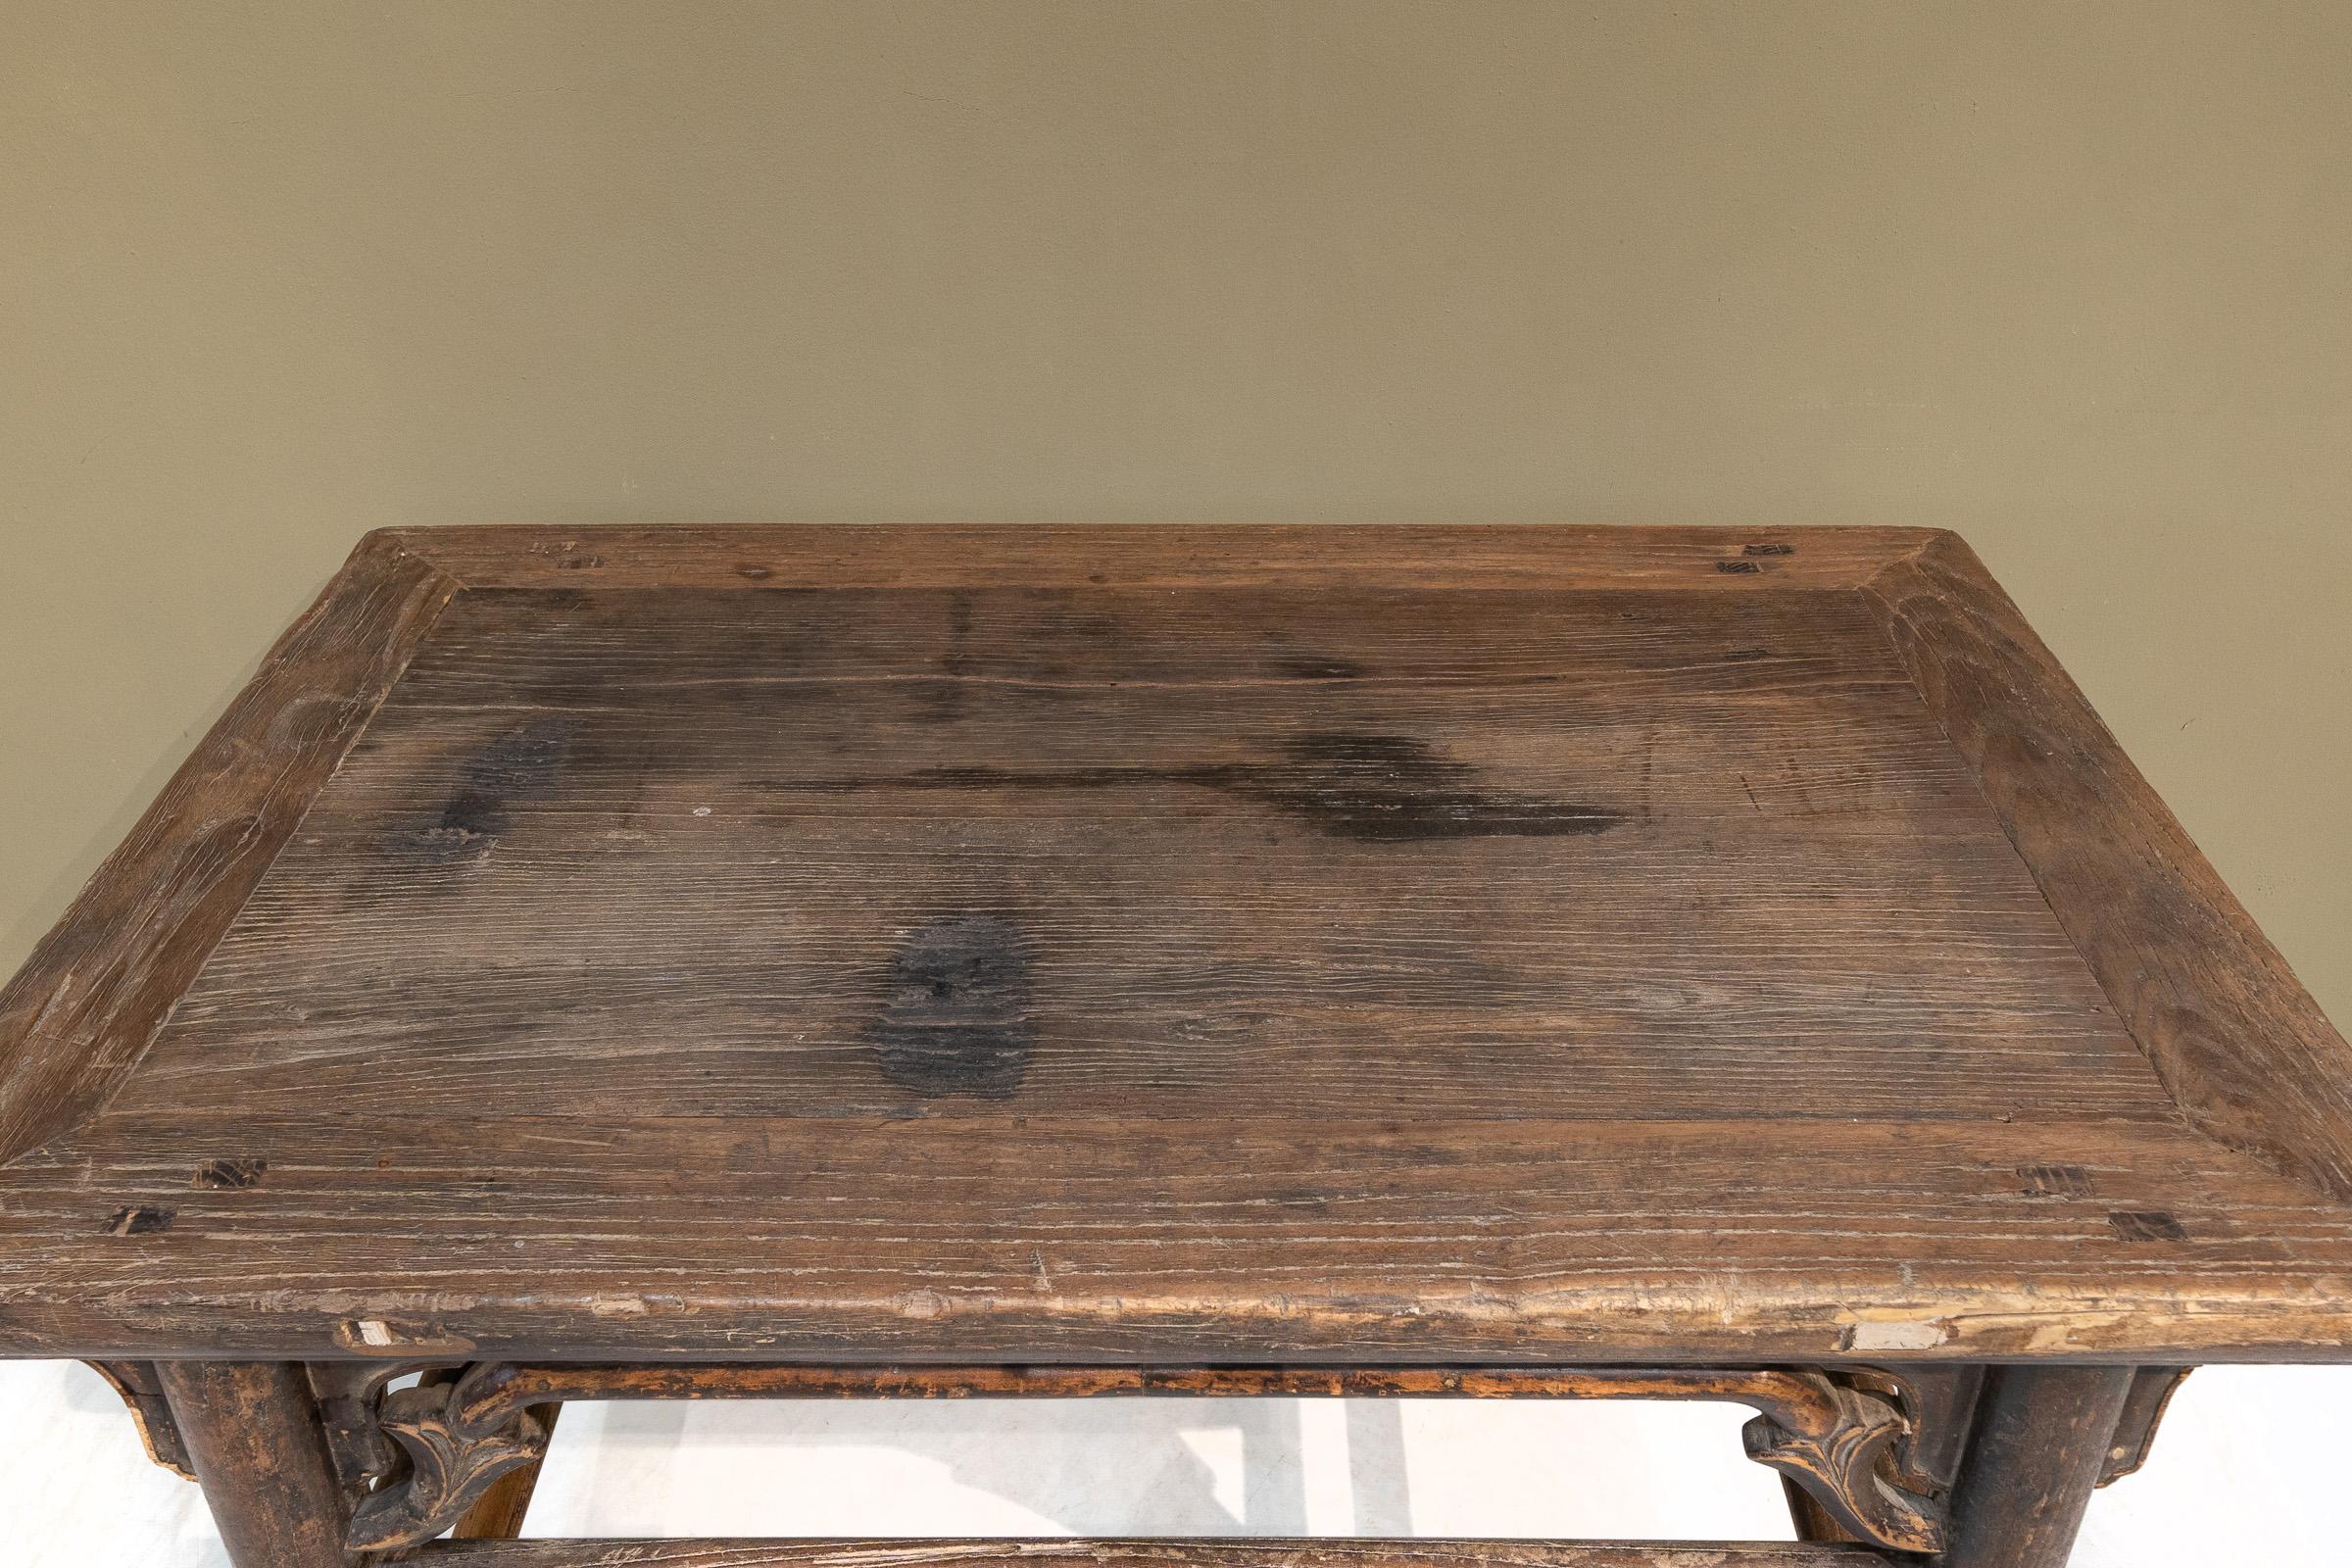 Dieser antike Weintisch aus Ulmenholz aus Shanxi mit doppelten Bahren an den Seiten hat ausgezeichnete Proportionen und eine hervorragende Patina. Die Buckelträger auf der Vorder- und Rückseite sind elegant geschwungen und auch die Schürzen haben